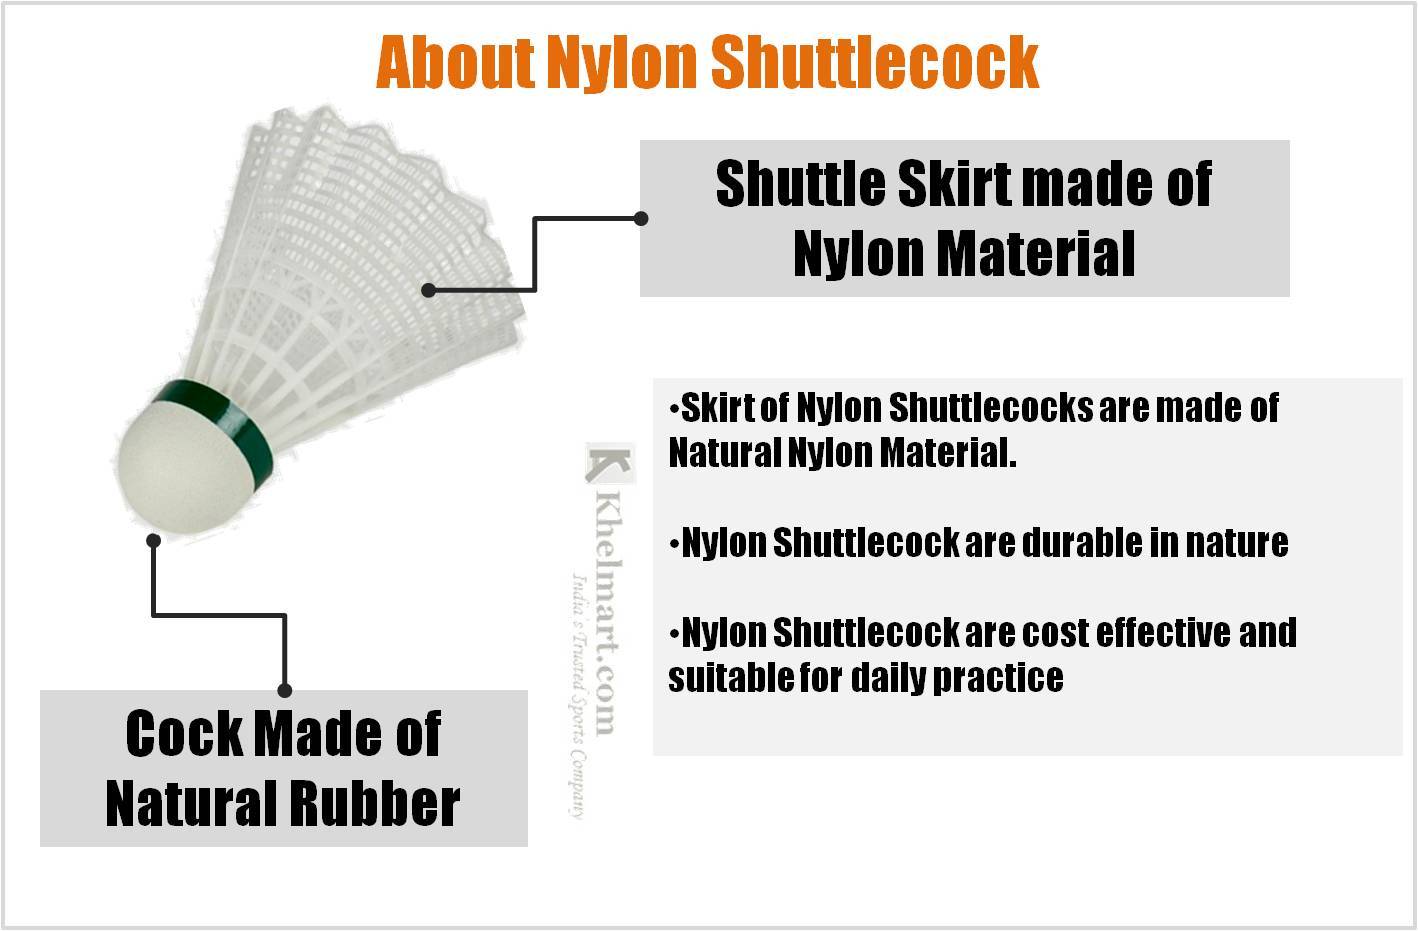 About_Nylon_Shuttlecocks.jpg 